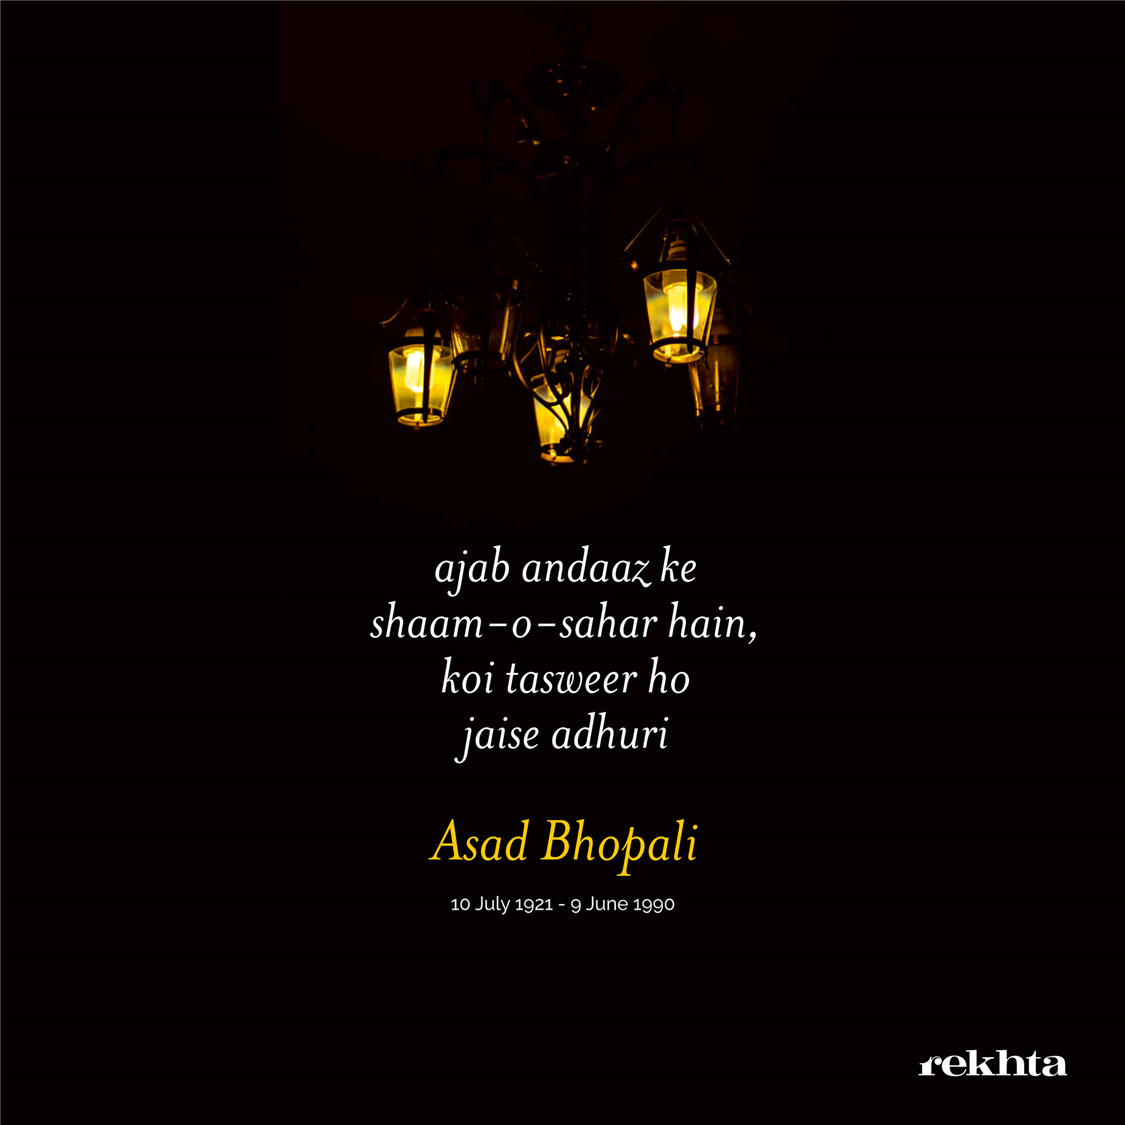 ajab andaaz ke shaam-o-sahar hai.n-Asad Bhopali